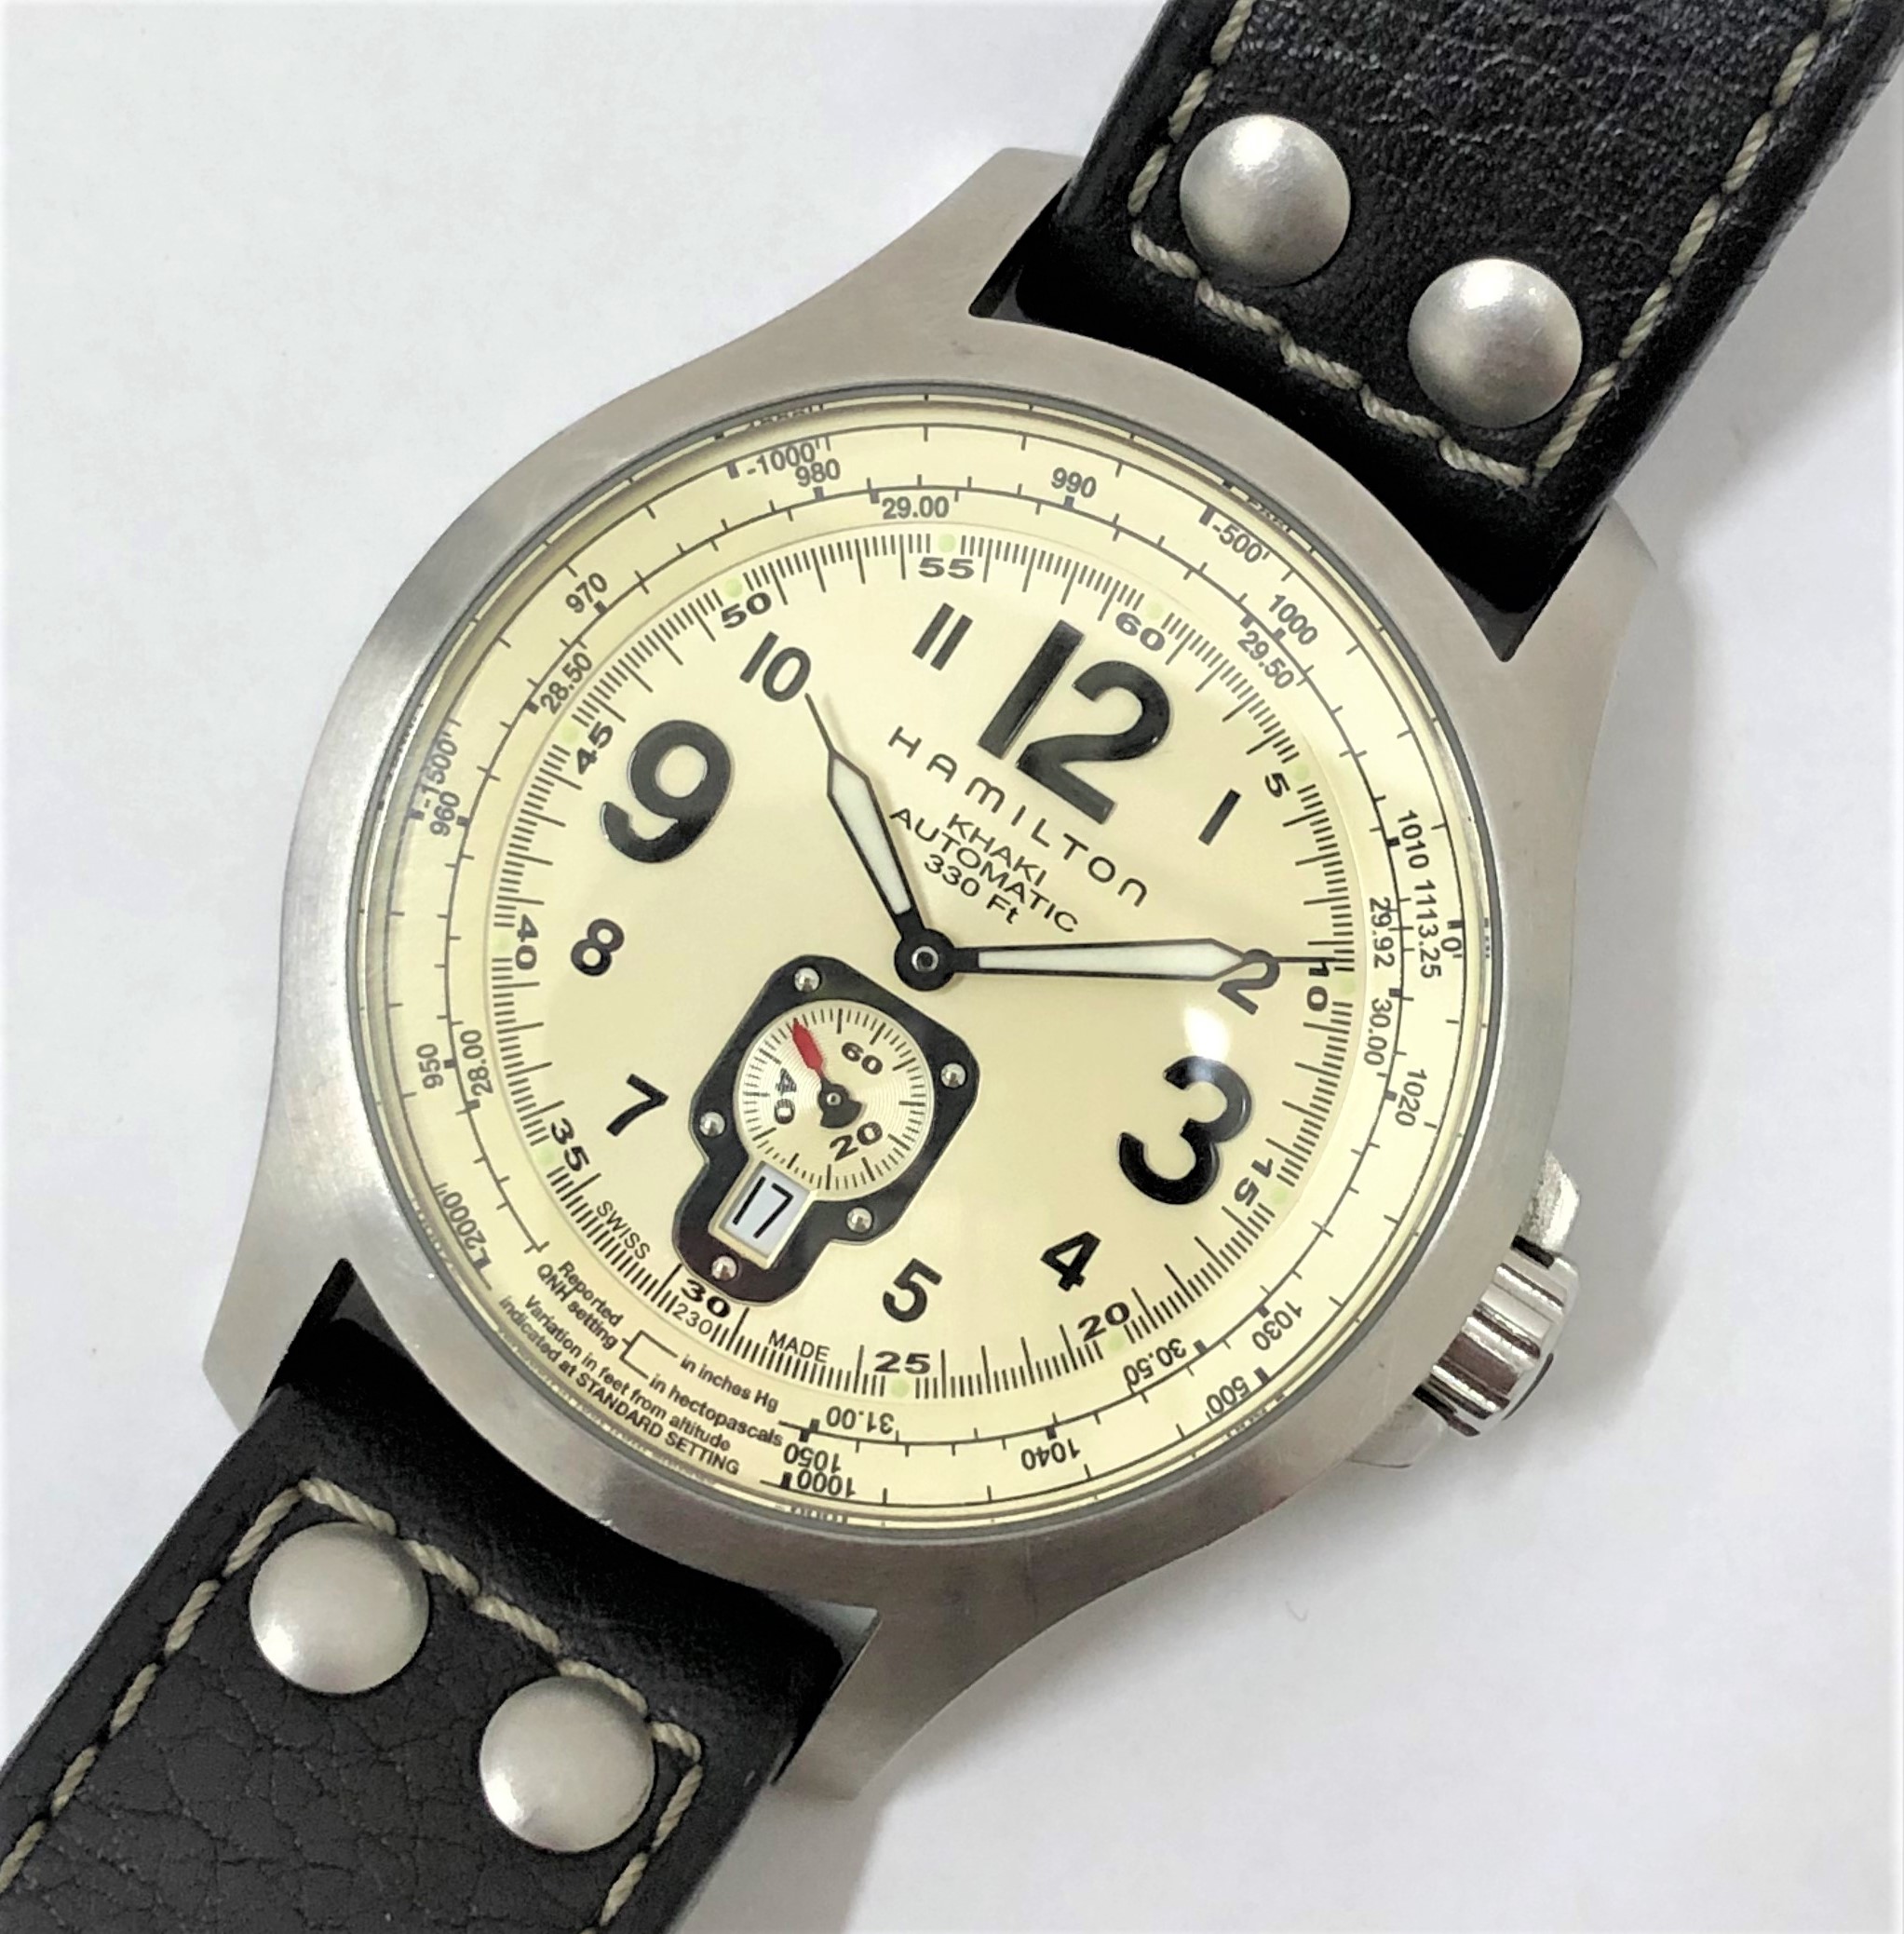 【HAMILTON/ハミルトン】カーキ アビエーター H765150 AT 腕時計